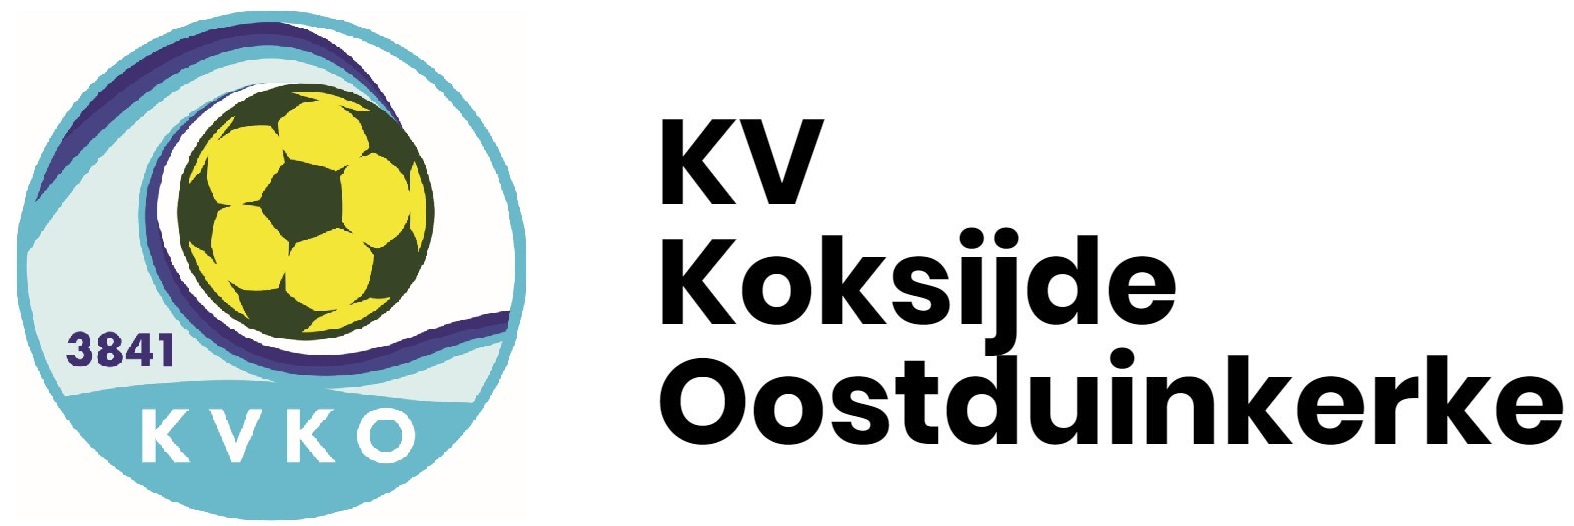 KV Koksijde Oostduinkerke Logo